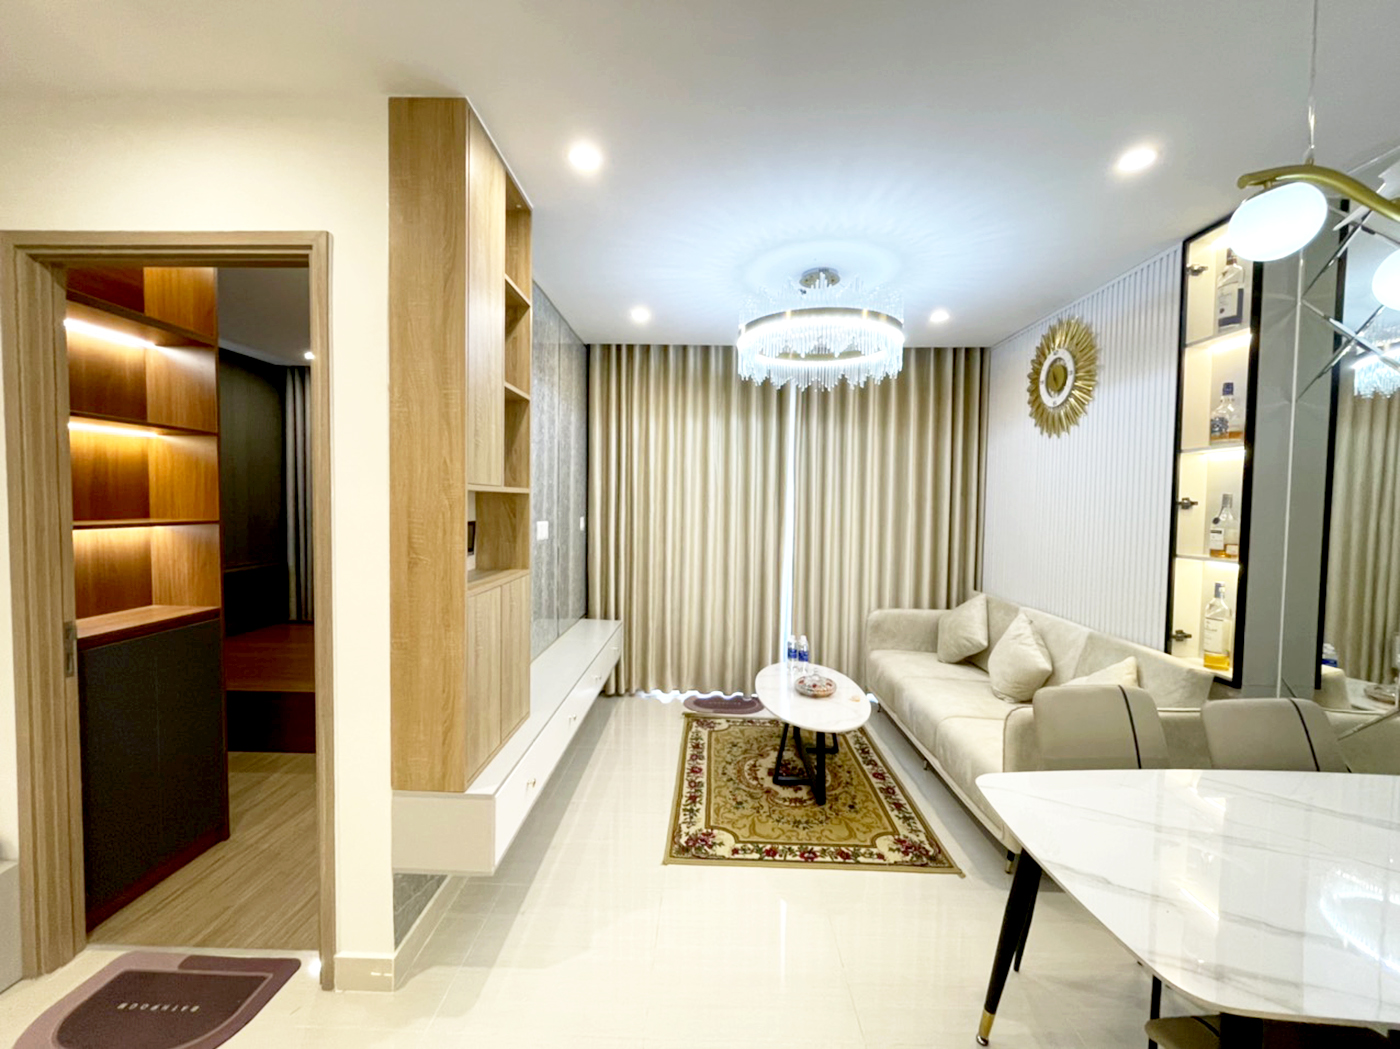 Phòng khách, phong cách Hiện đại Modern, hoàn thiện nội thất, căn hộ The Origami